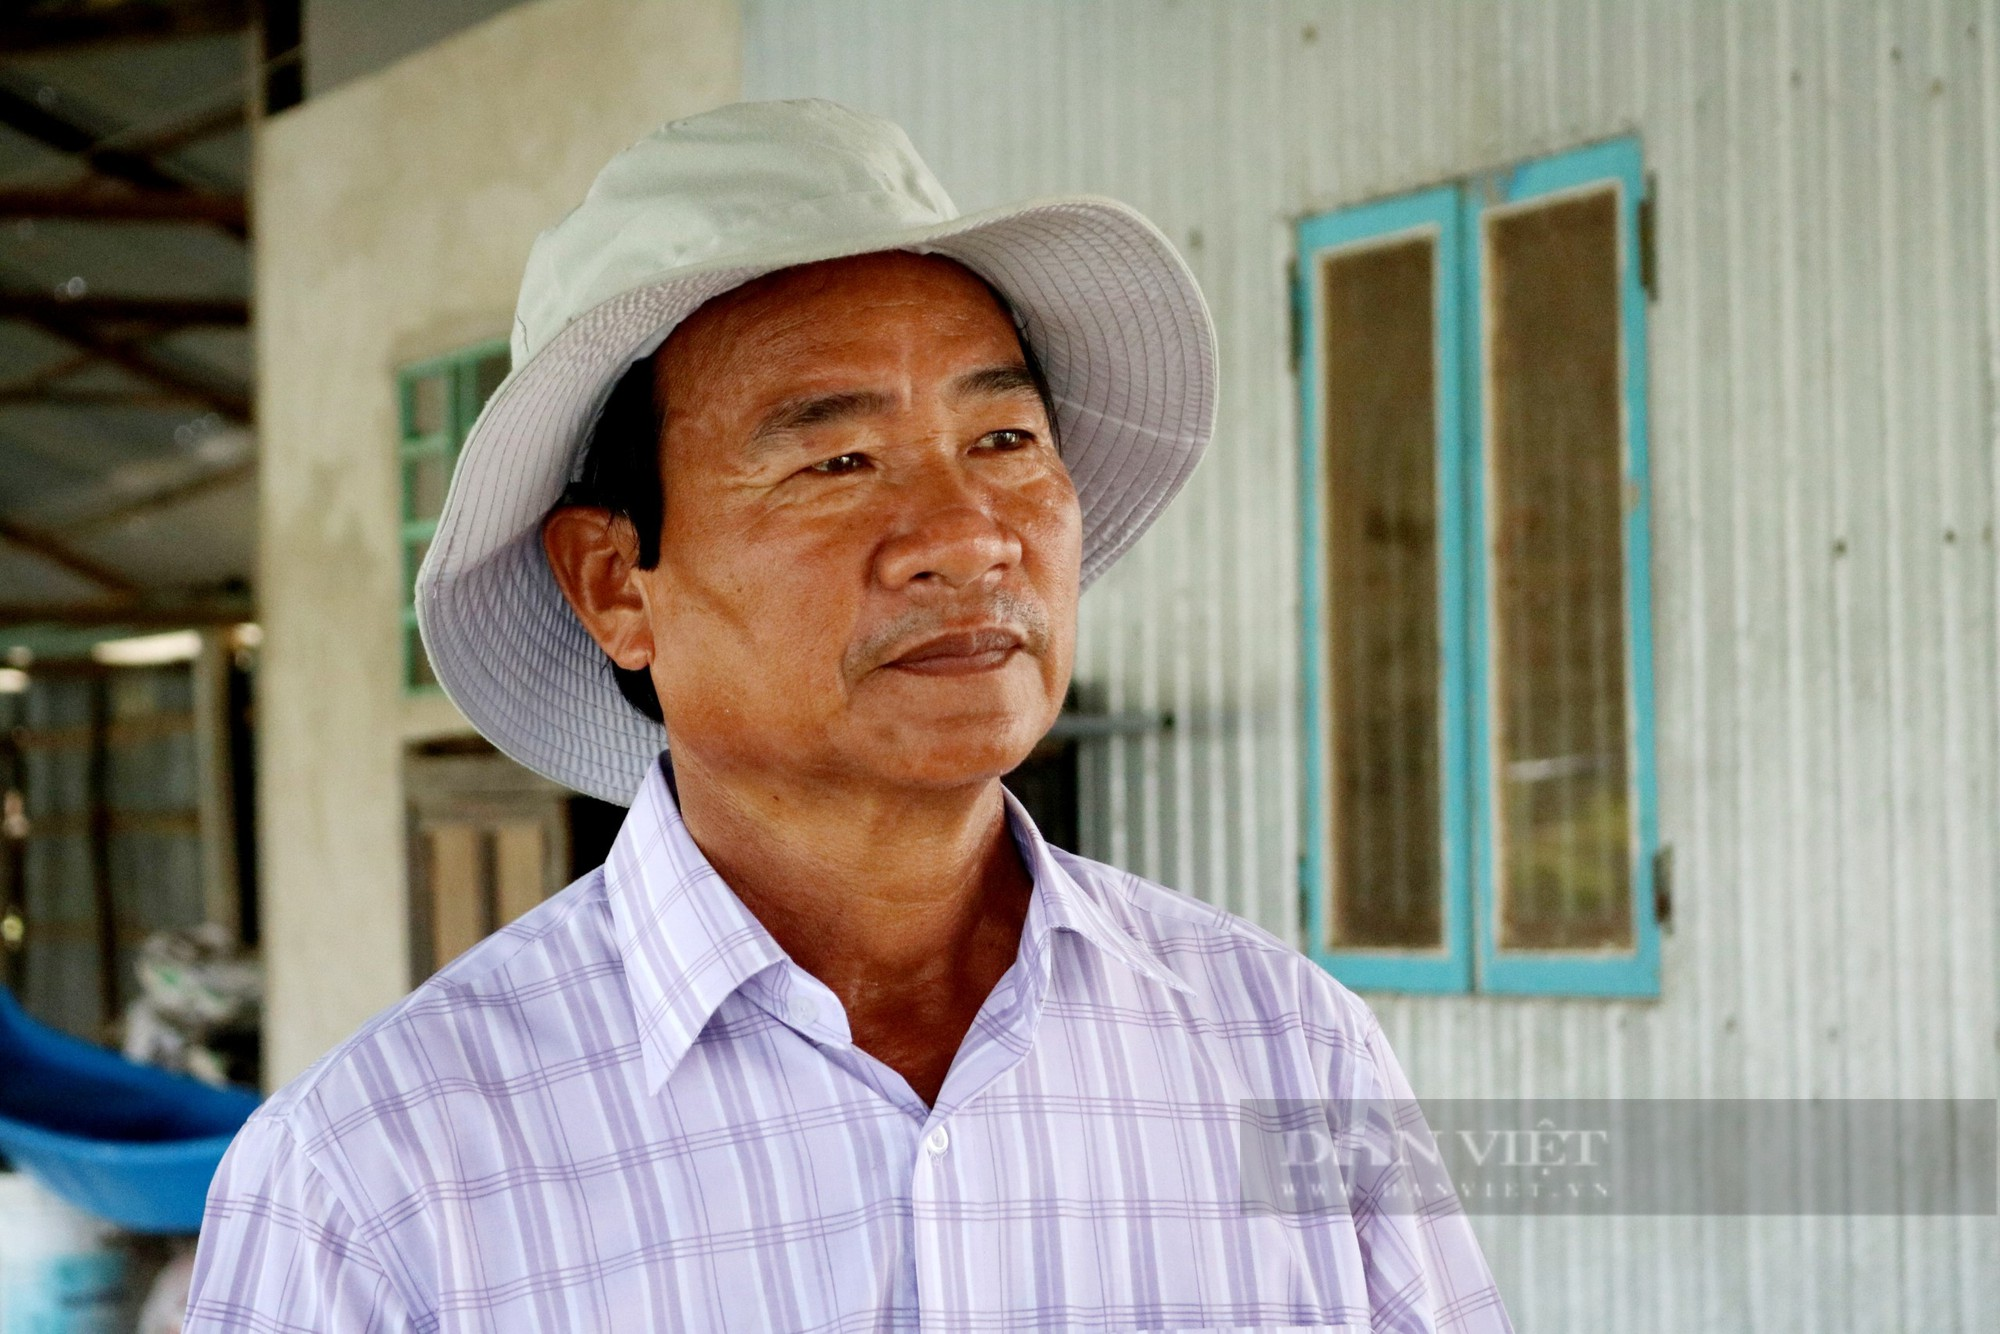 Chuyện về lão nông ở An Giang 20 năm nuôi cá tra lấy lãi lập quỹ từ thiện gia đình giúp người nghèo - Ảnh 1.